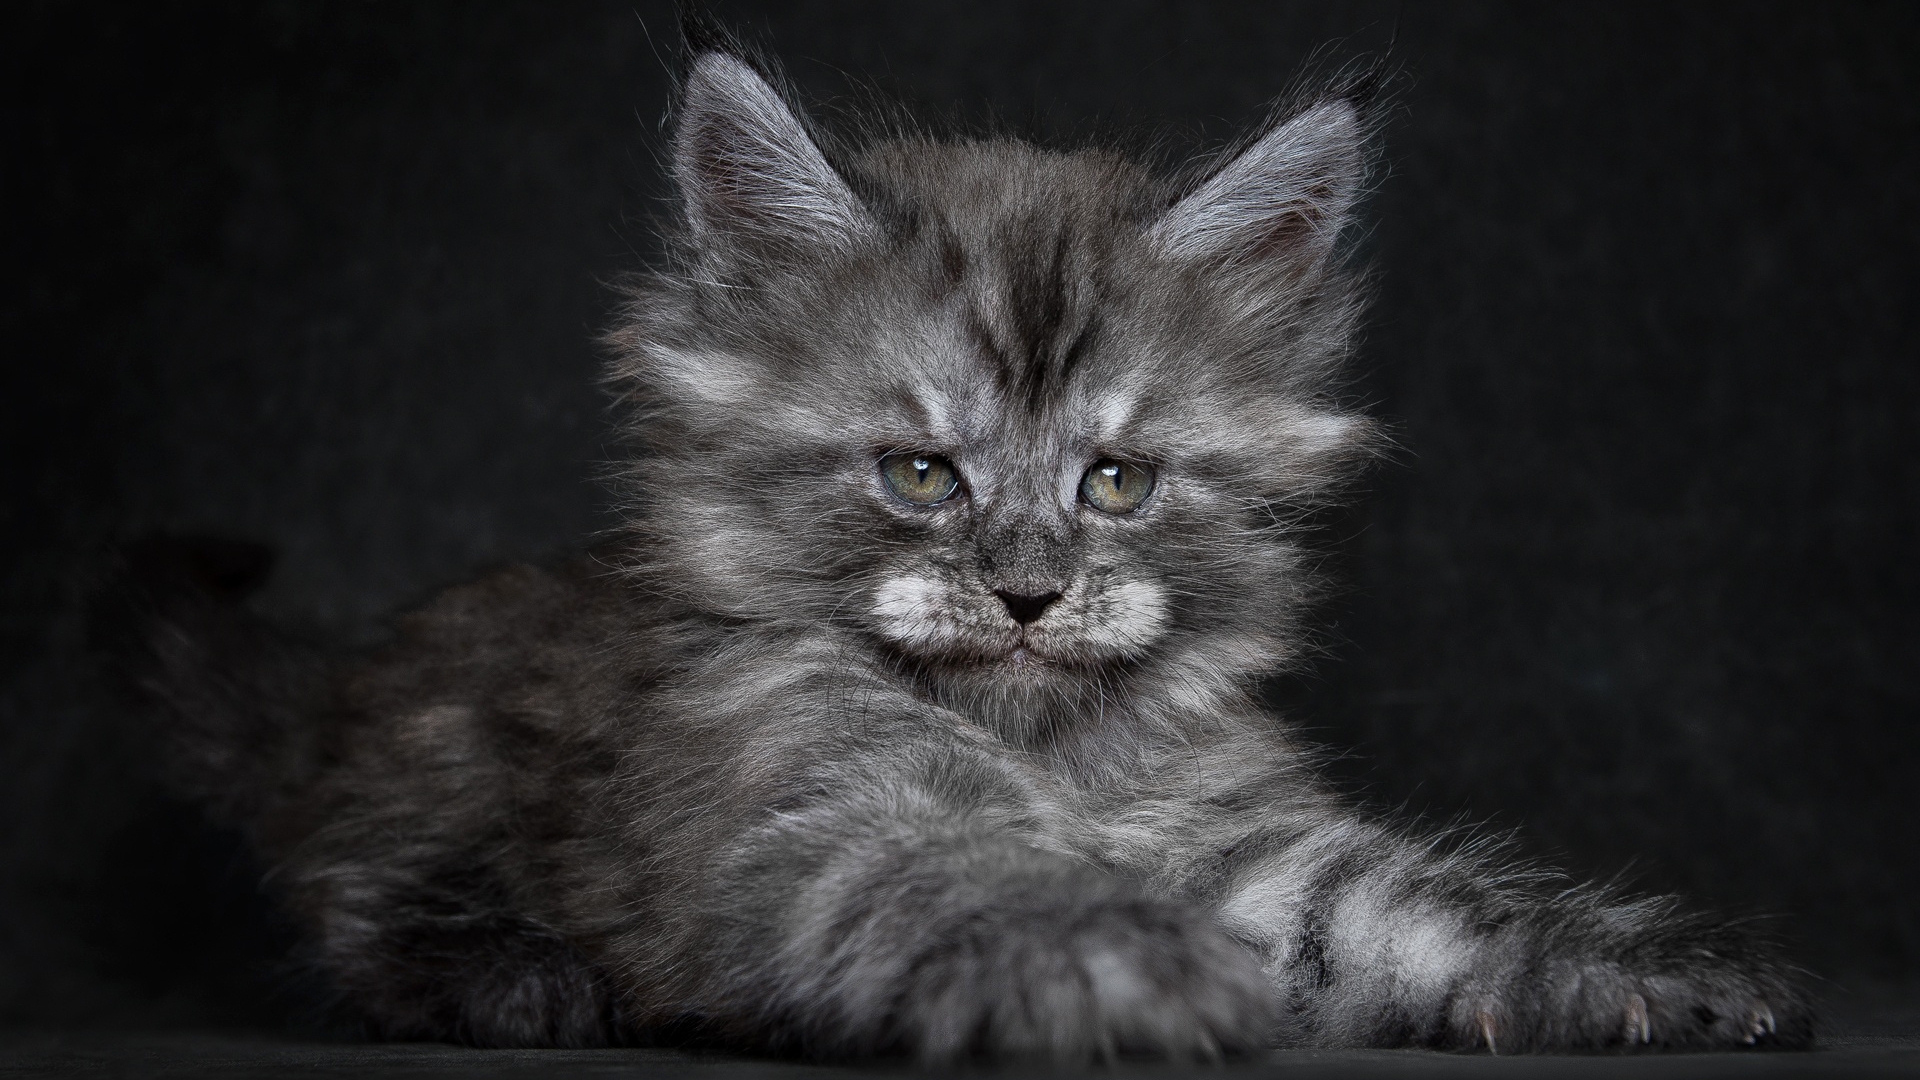 Cute Fluffy Kitten for 1920 x 1080 HDTV 1080p resolution